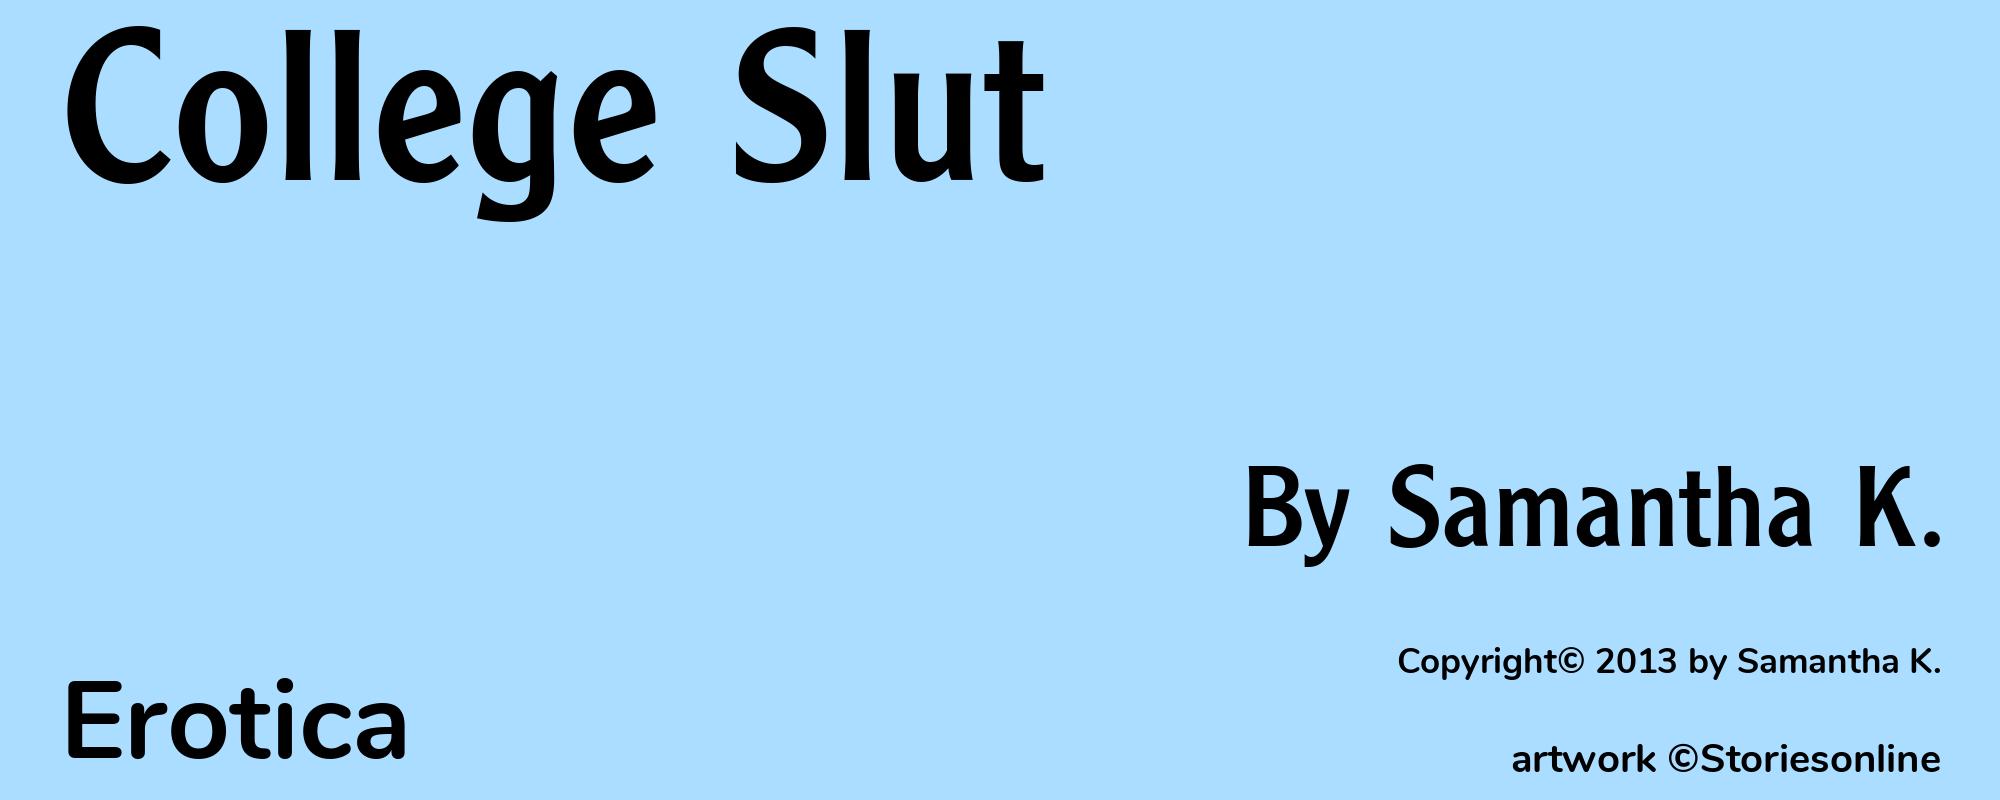 College Slut - Cover